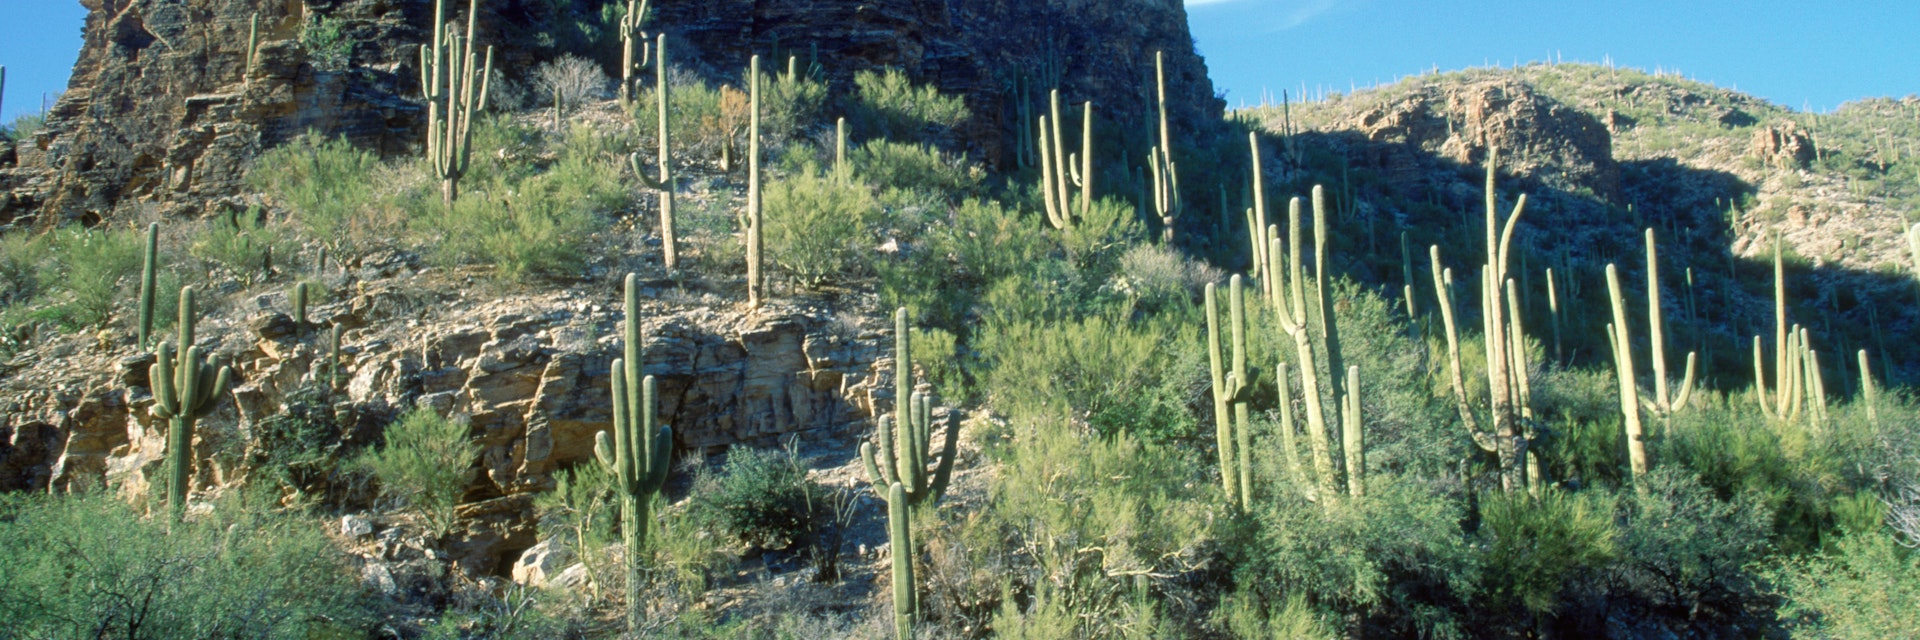 Women walking on road below saguaro cacti, Sabino Canyon, Tucson, AZ - stock photo
